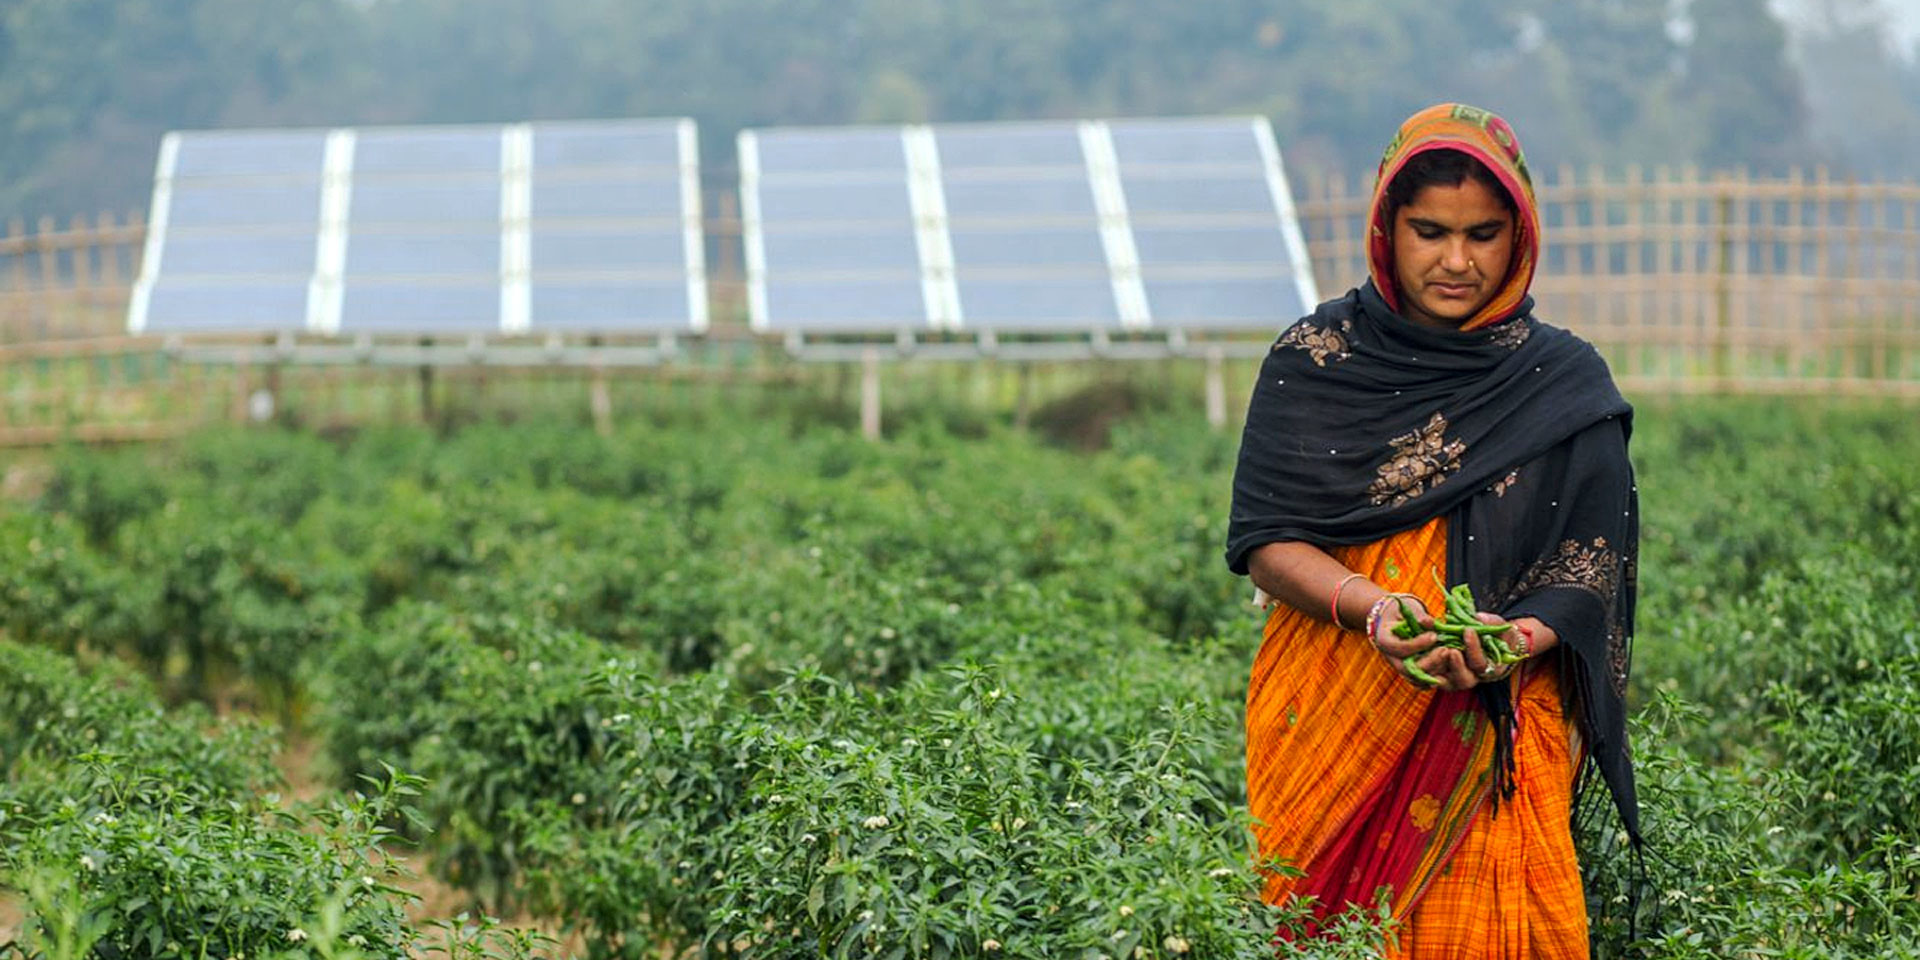 Une femme en sari orange récolte des légumes verts frais dans un paysage par ailleurs aride. Des installations solaires sont visibles en arrière-plan.